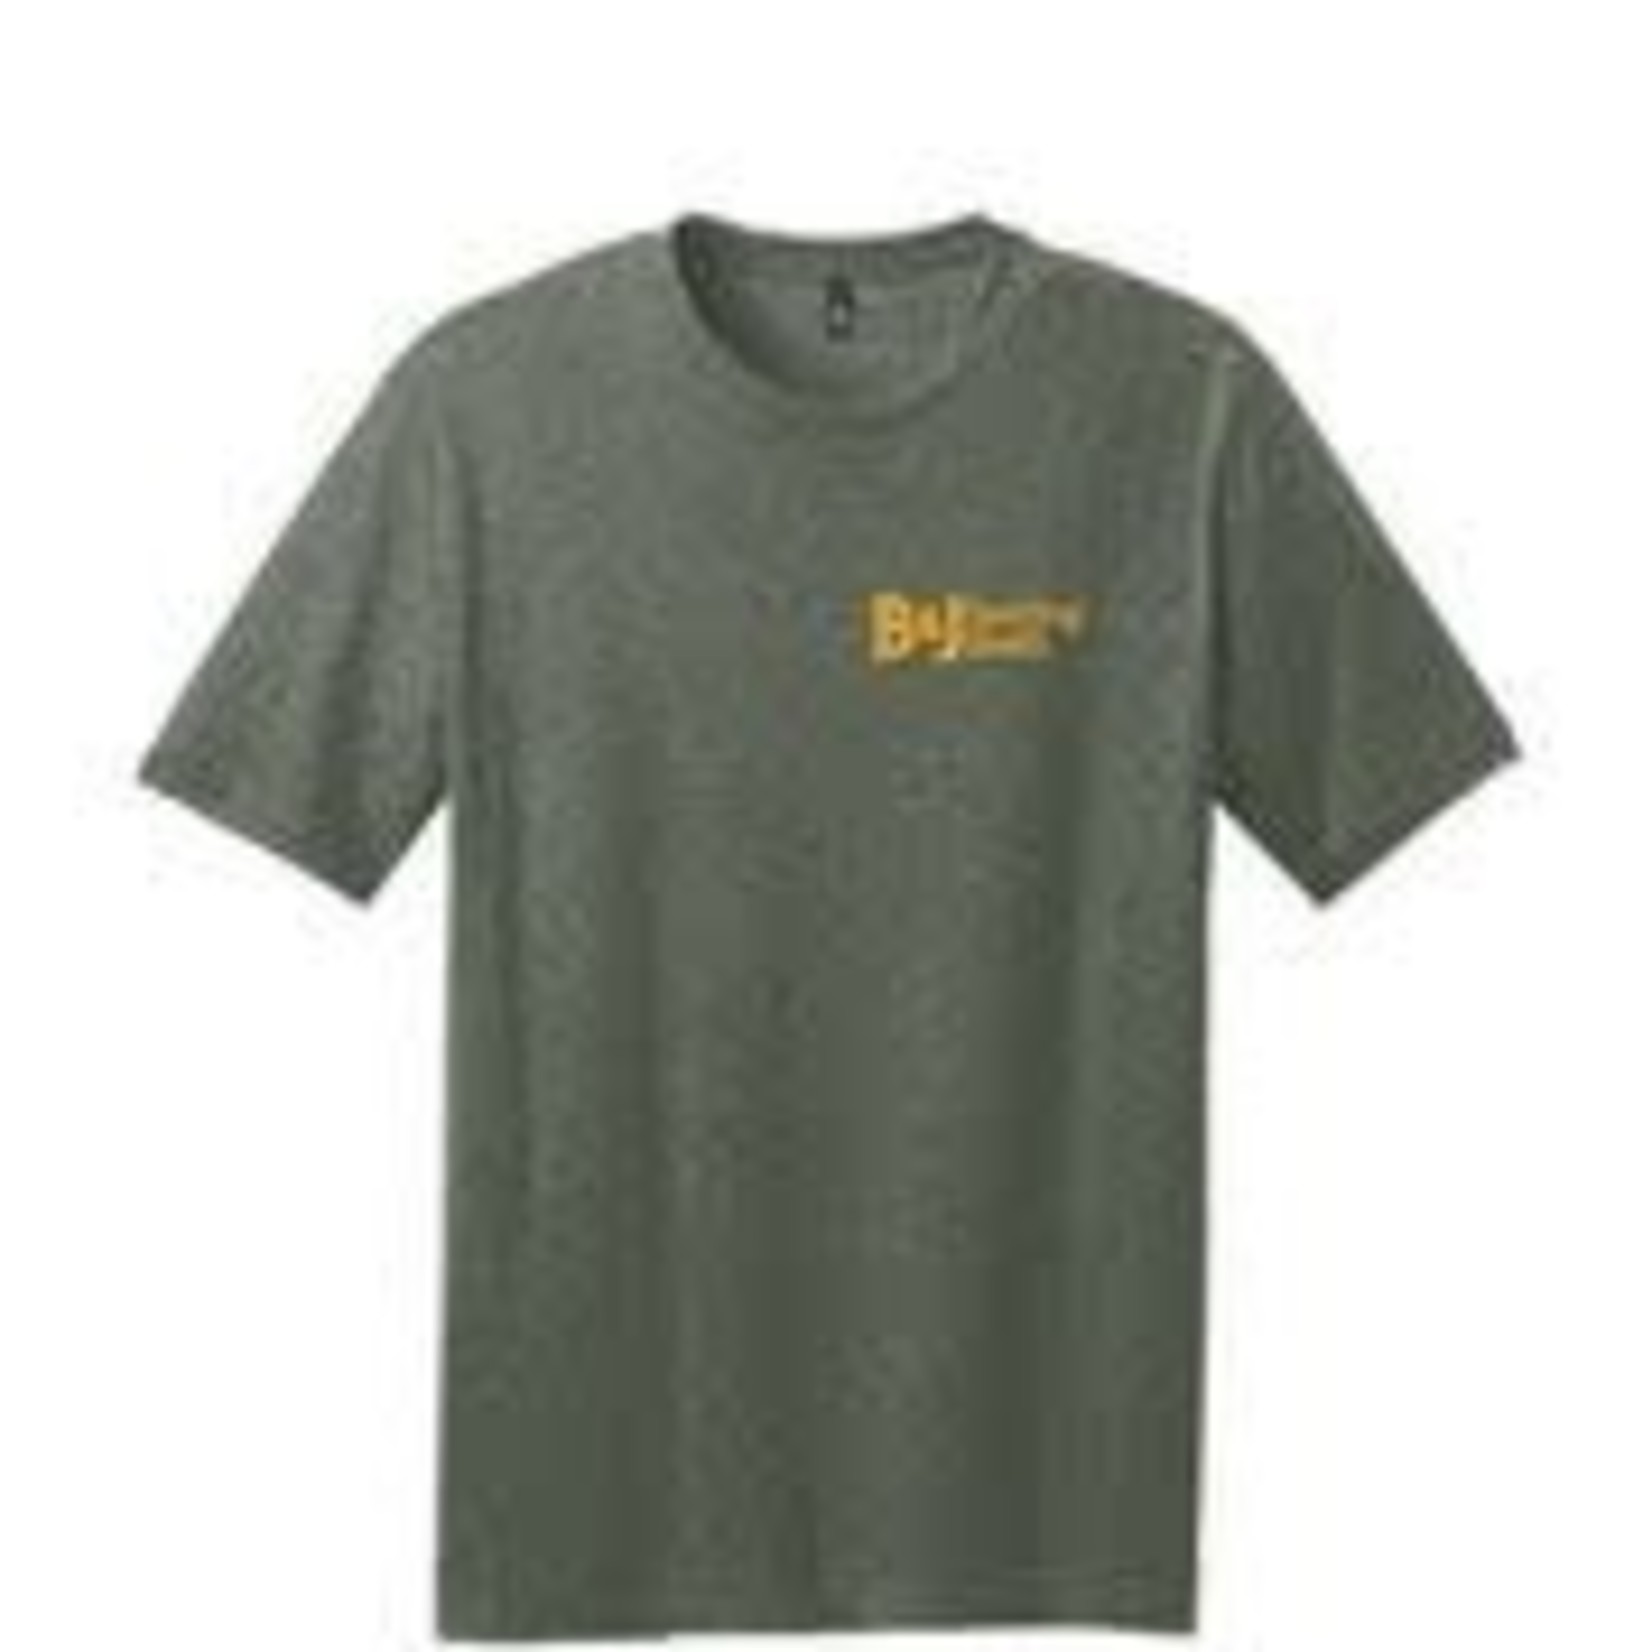 B&J Shirt SS Grn